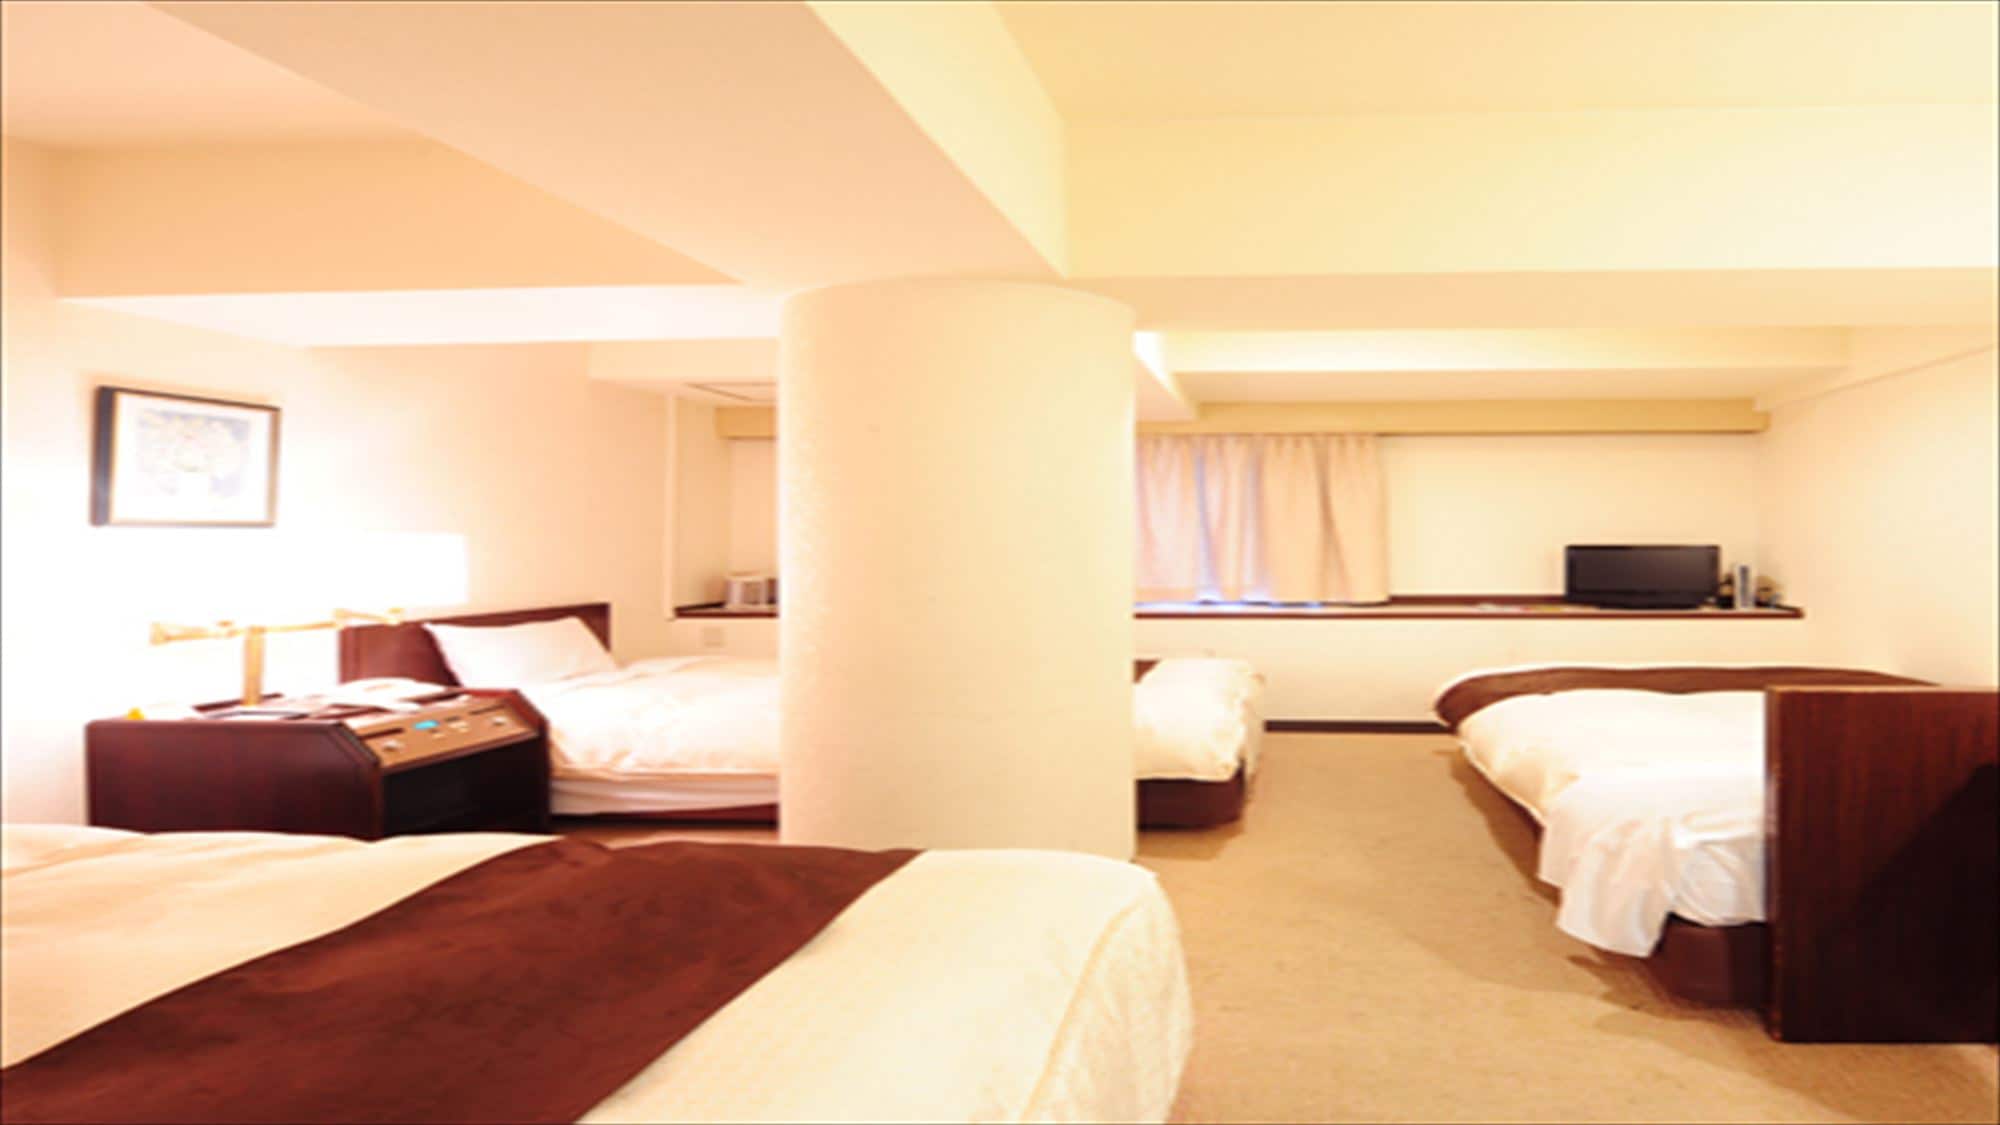 Triple room 23㎡ in size, 100cm in bed width